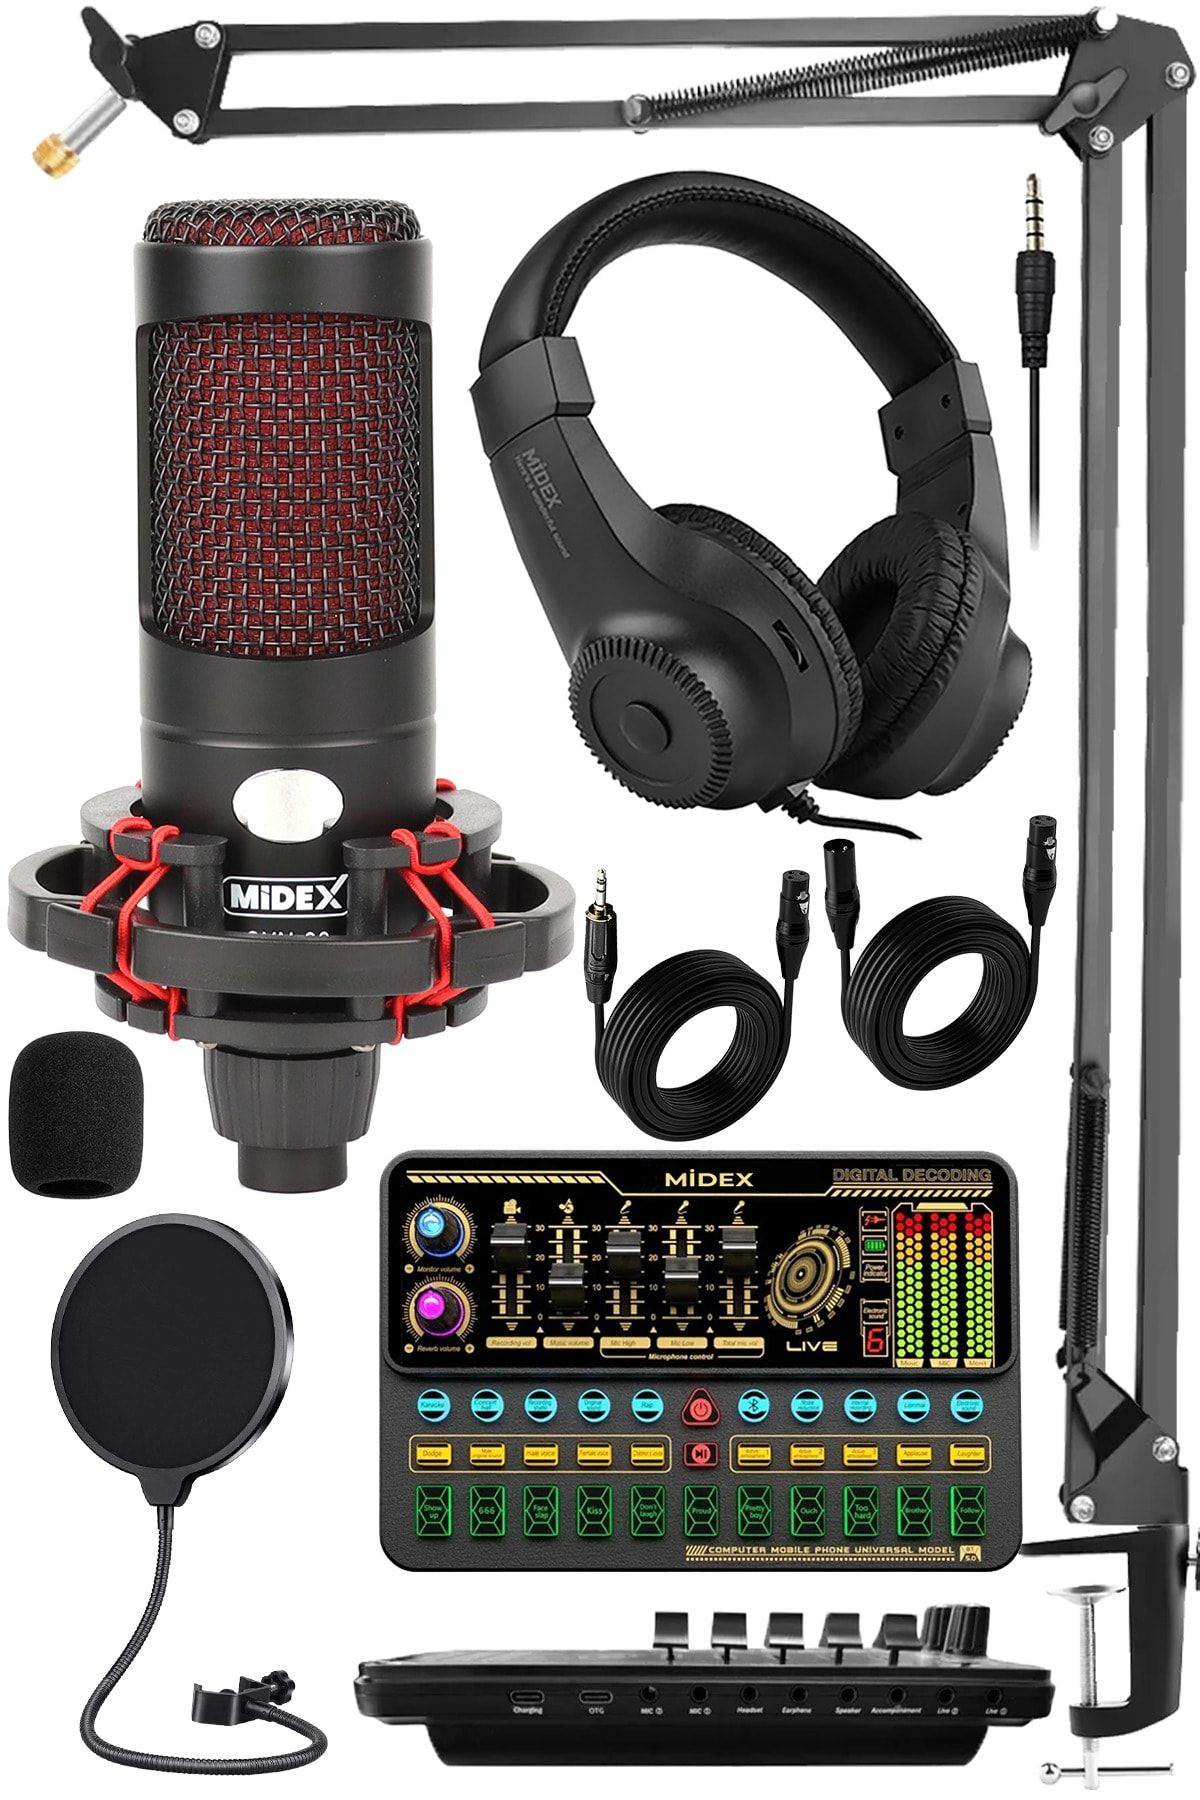 Midex Cxn-30 Paket-11 Vs11 Ses Kartlı Condenser Mikrofon Stand Kulaklık Seti